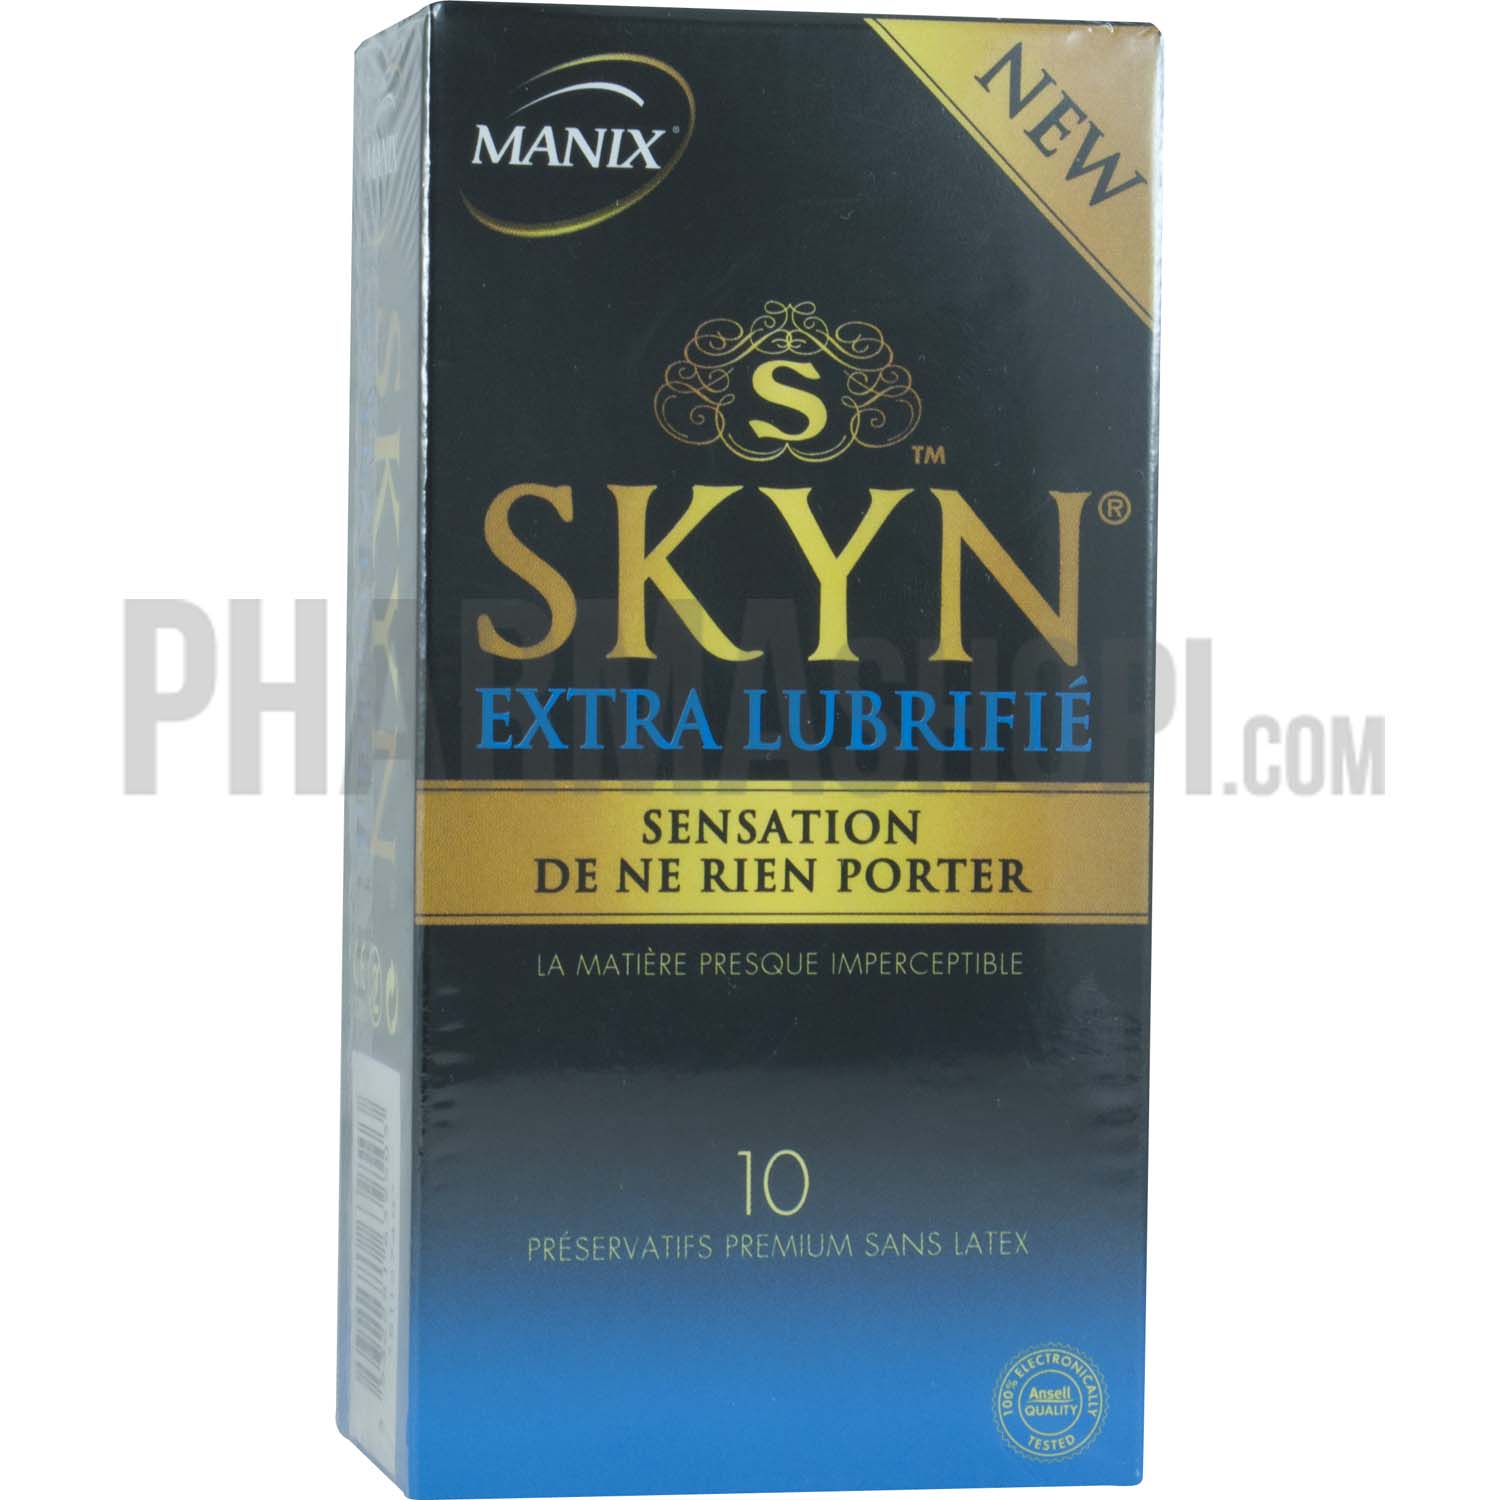 Préservatifs skyn extra lubrifié sensation de ne rien porter Manix - 10 préservatifs